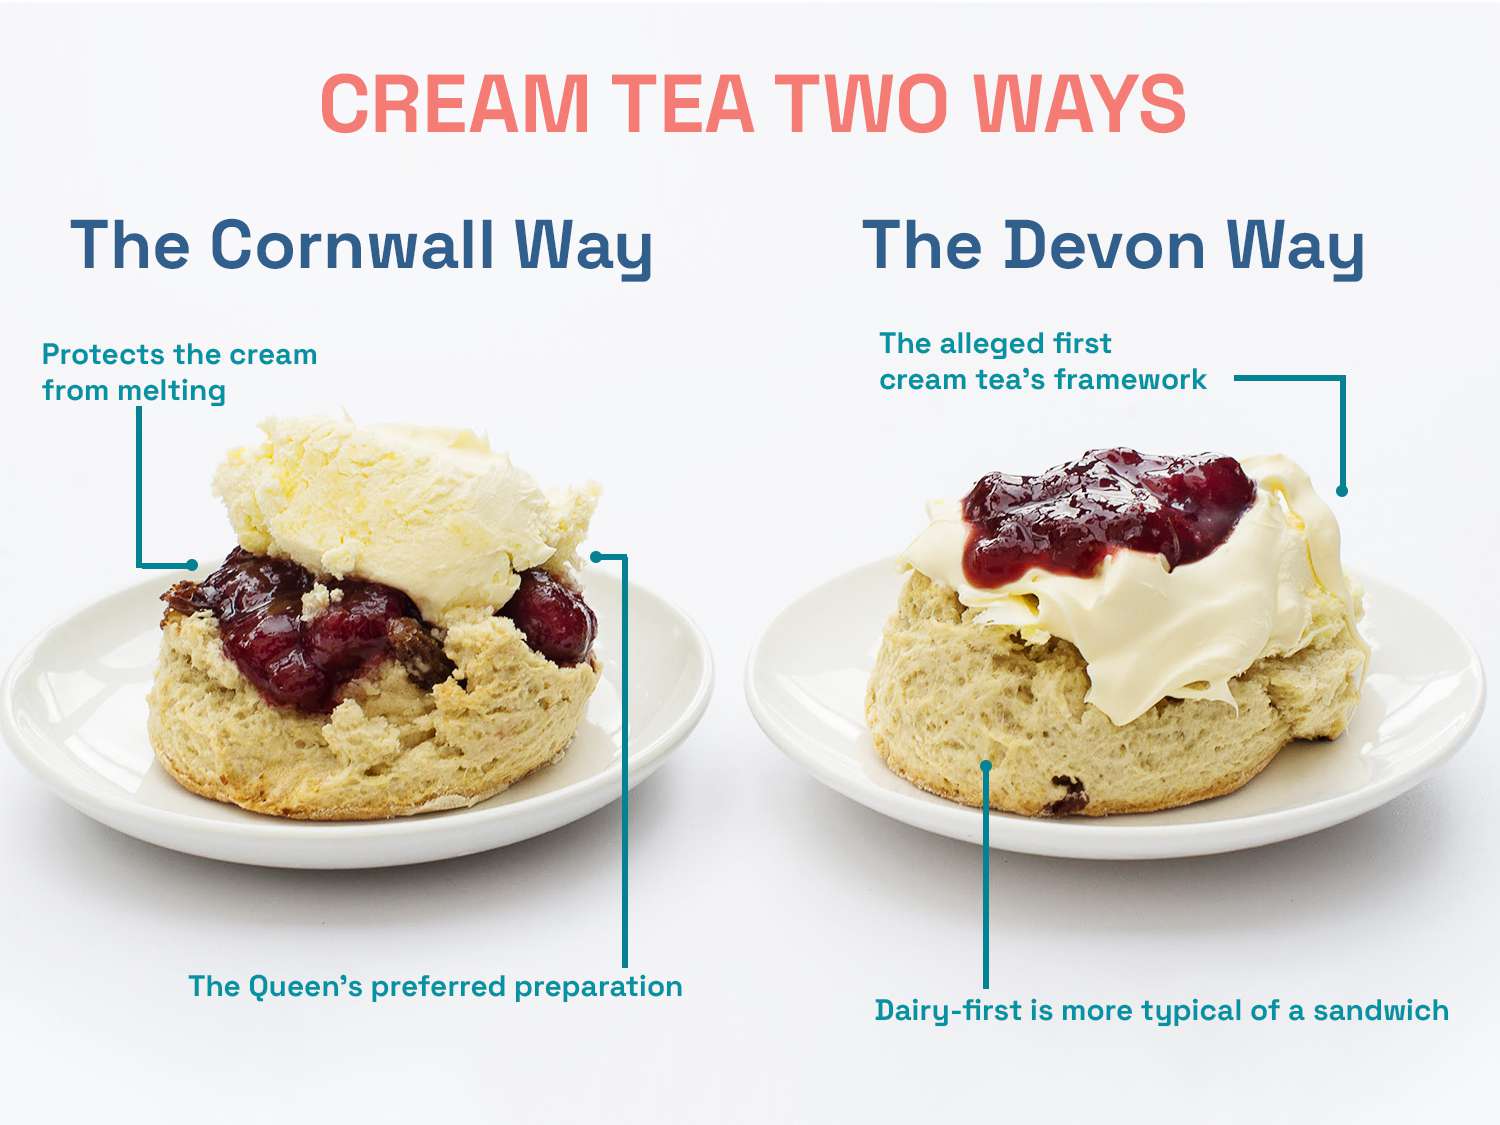 图形标记奶油茶两种方式与两个奶油茶的照片,一个准备的康沃尔的方式,另准备德文郡。把引用文章申请每个准备照片